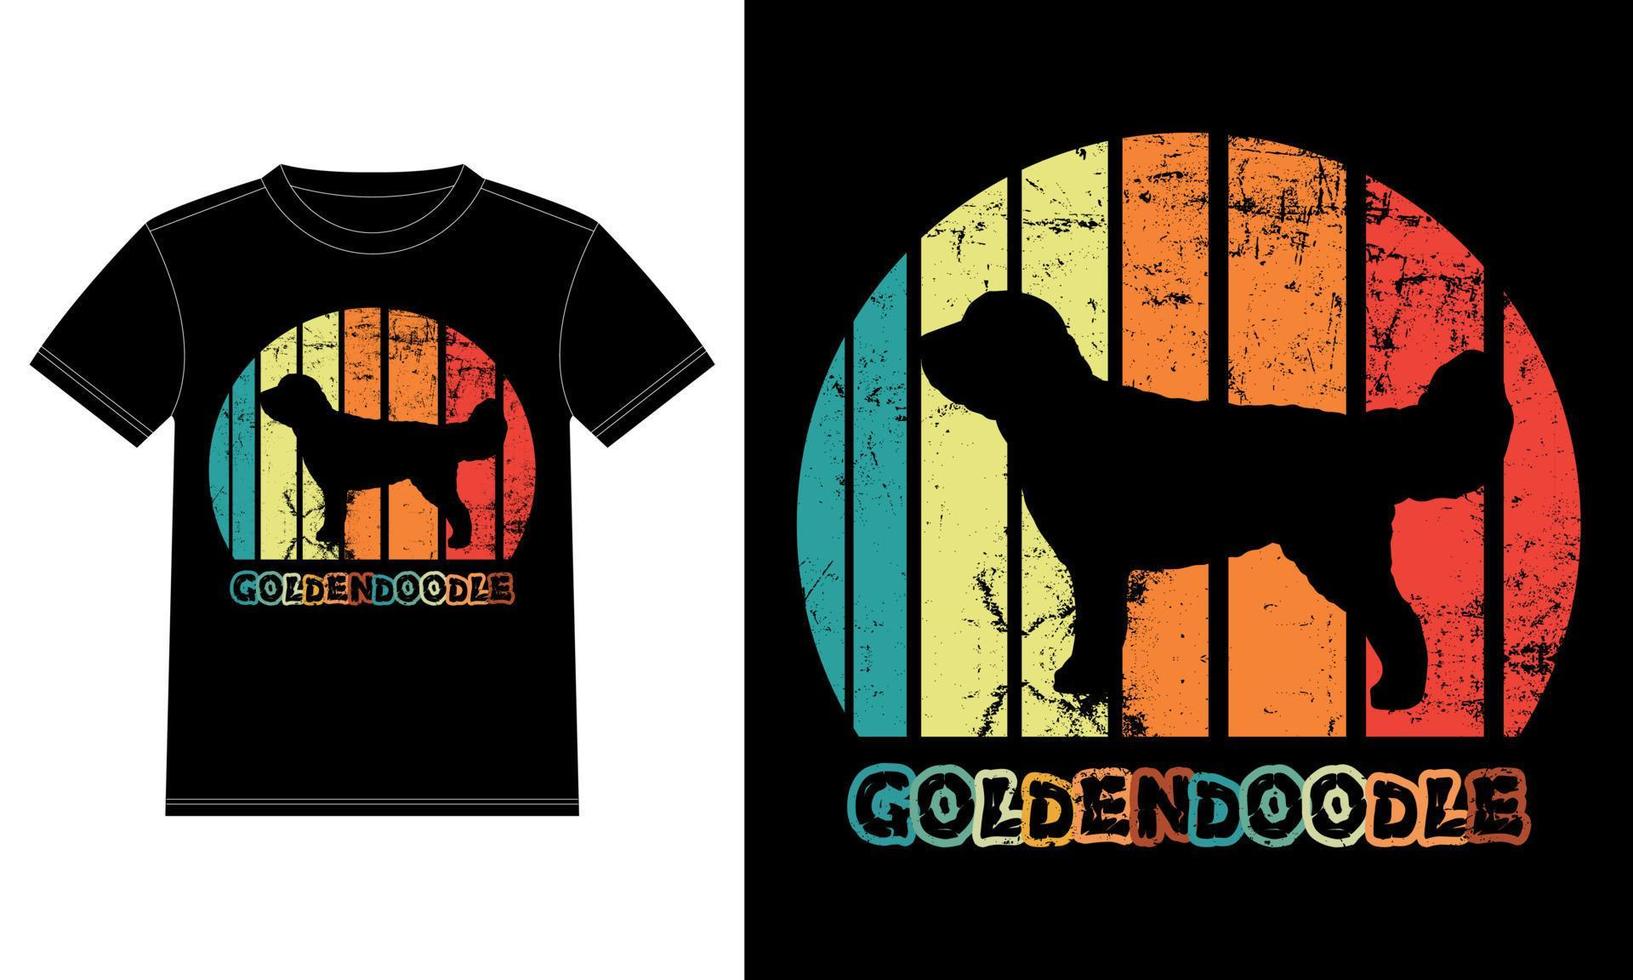 Sonnenuntergang-Silhouettegeschenke des lustigen goldendoodle Vintagen retro wesentlicher T - Shirt des Hundeliebhaber-Hundebesitzers vektor